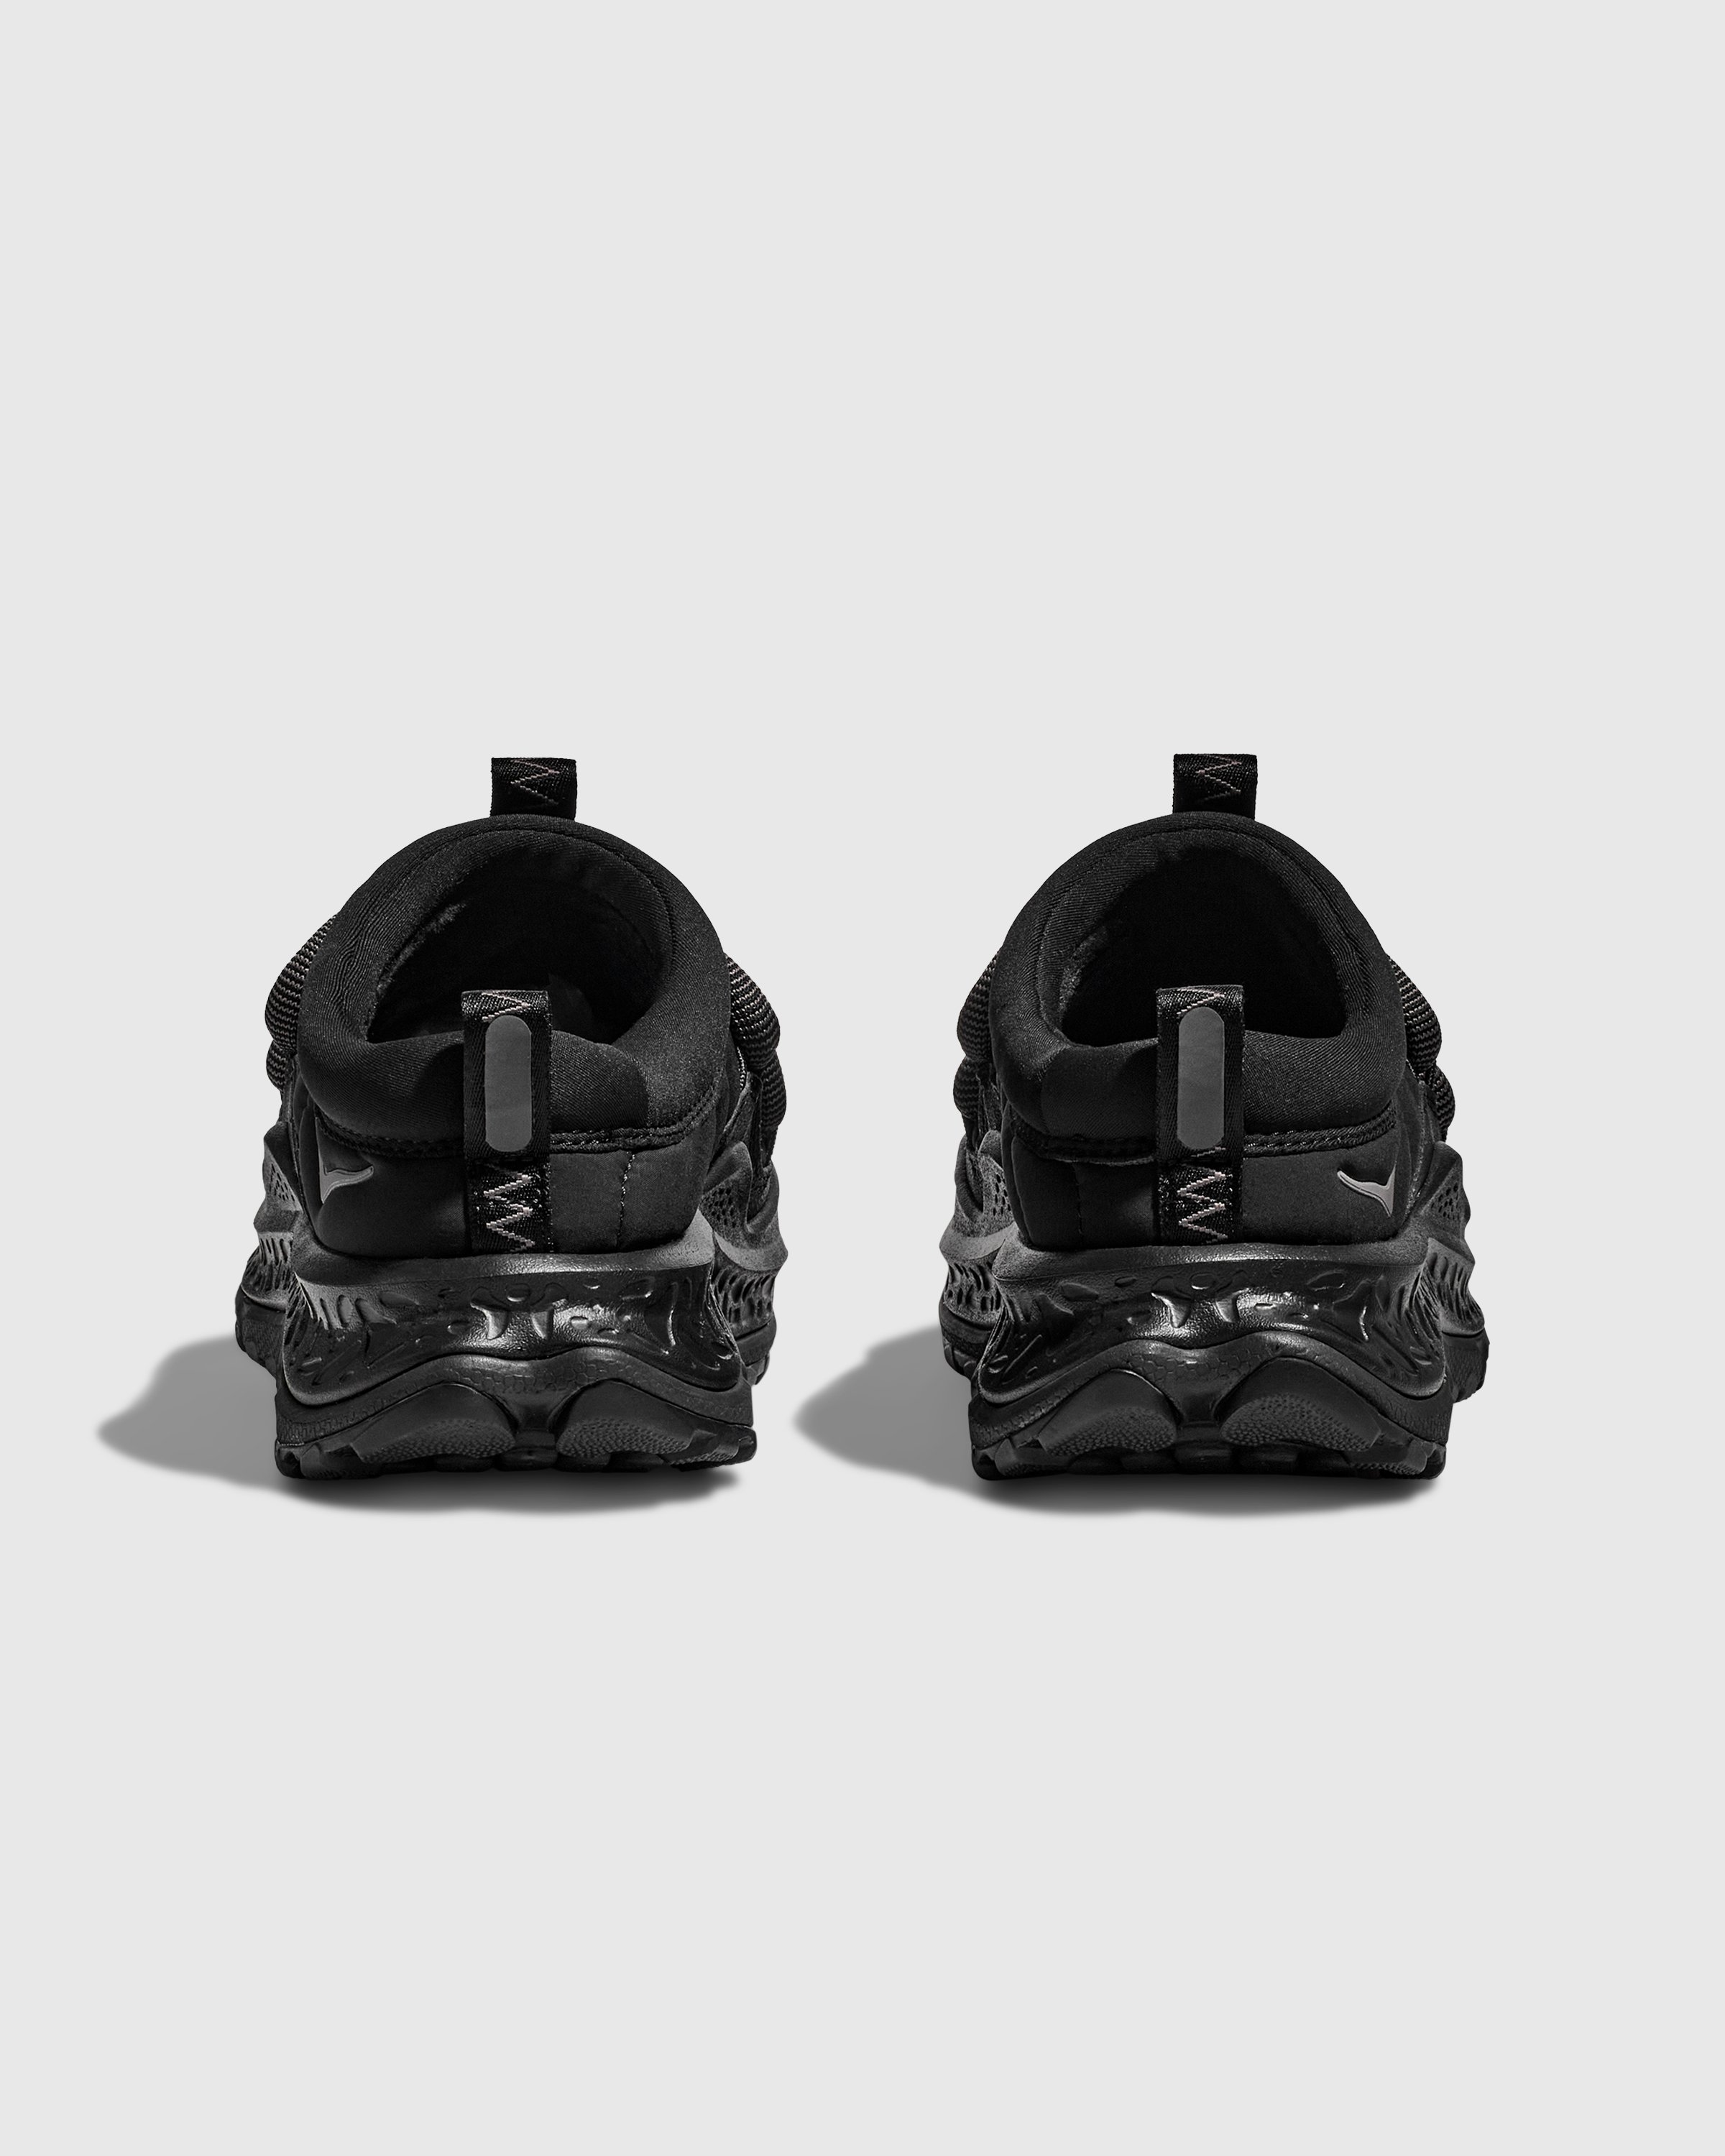 HOKA - U ORA PRIMO - Footwear - Black - Image 4